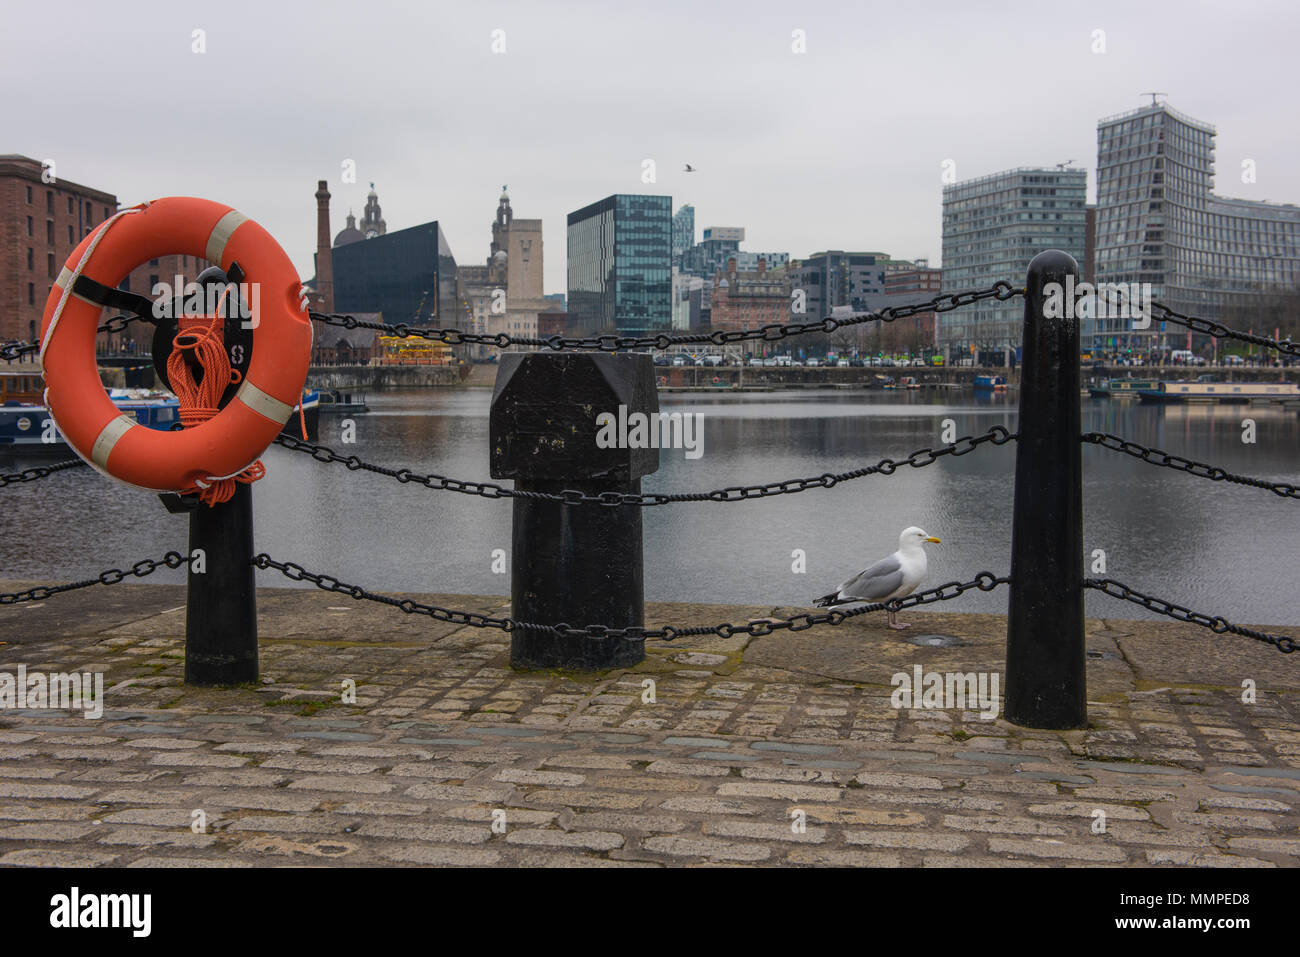 Salthouse Dock, Liverpool, avec en arrière-plan des bâtiments emblématiques, doté d'une bouée de sauvetage et d'une mouette Banque D'Images